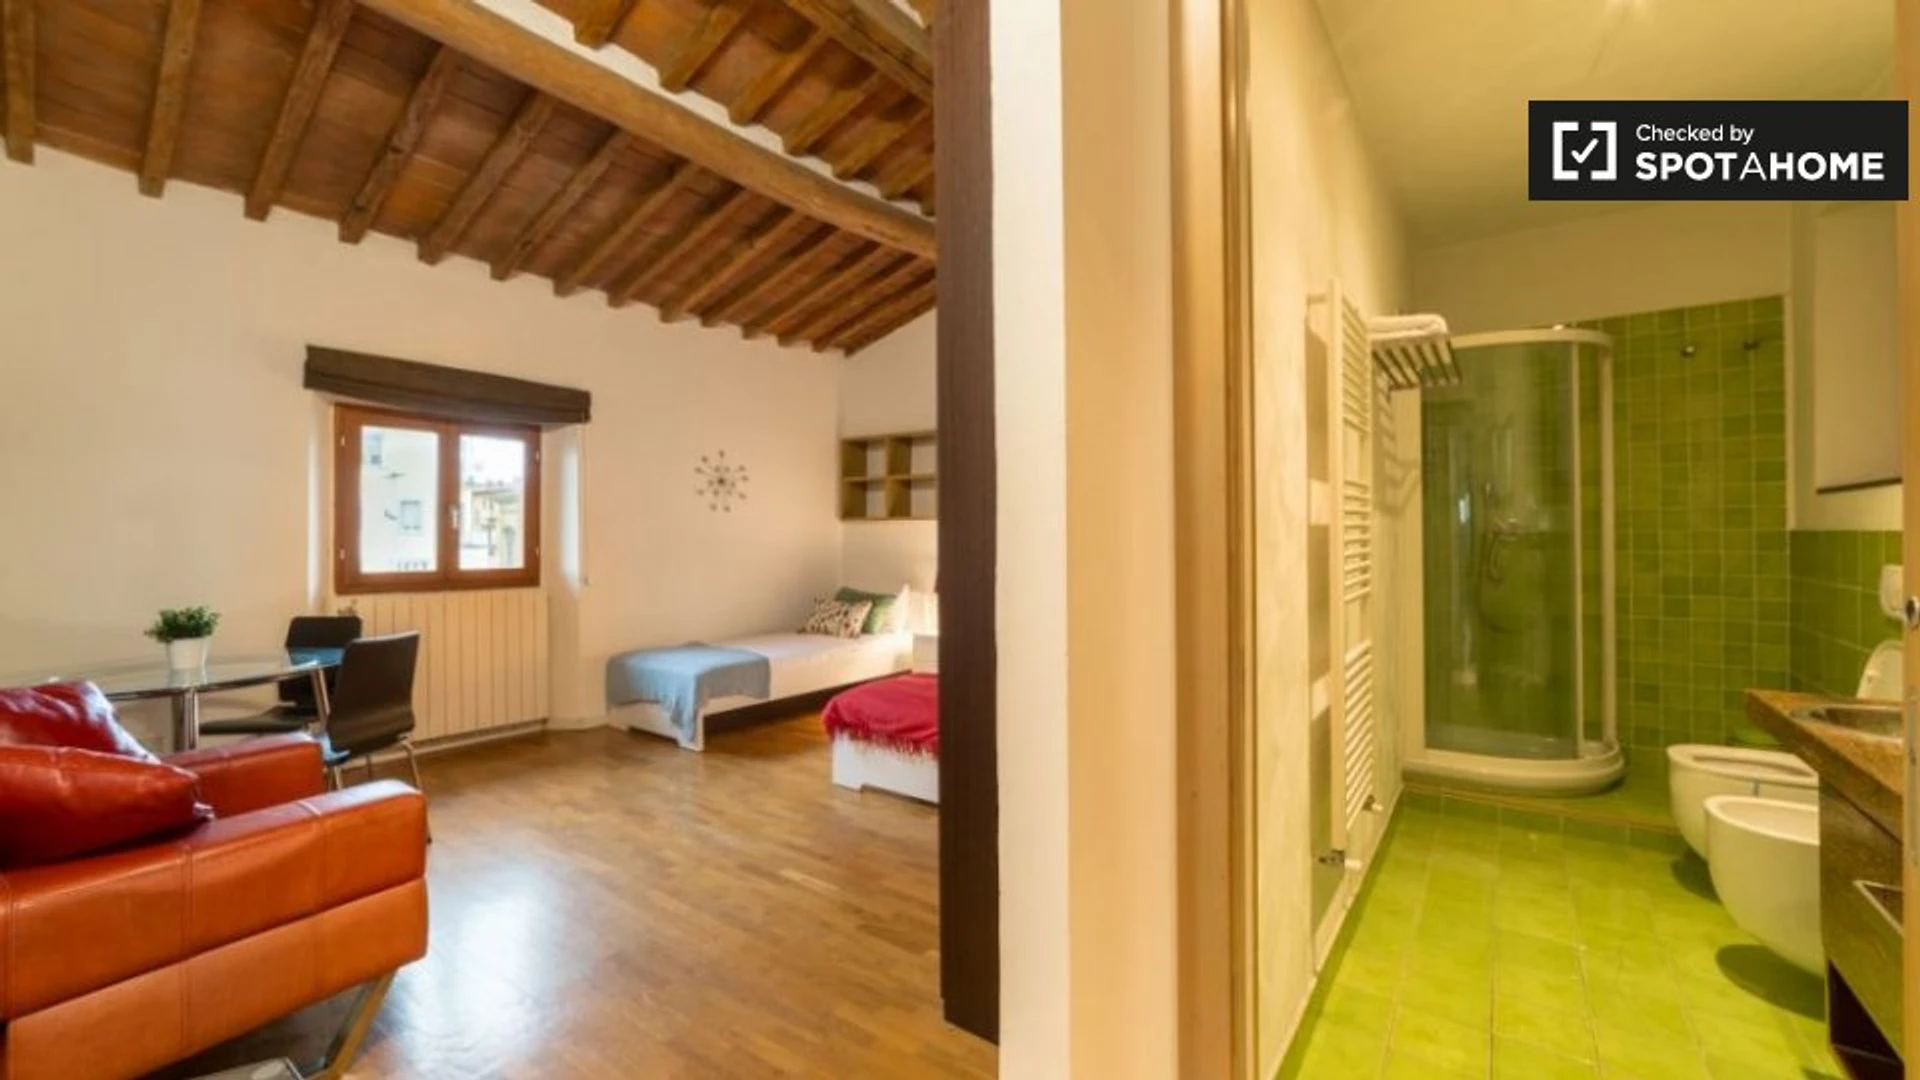 Alquiler de habitación en piso compartido en Florencia